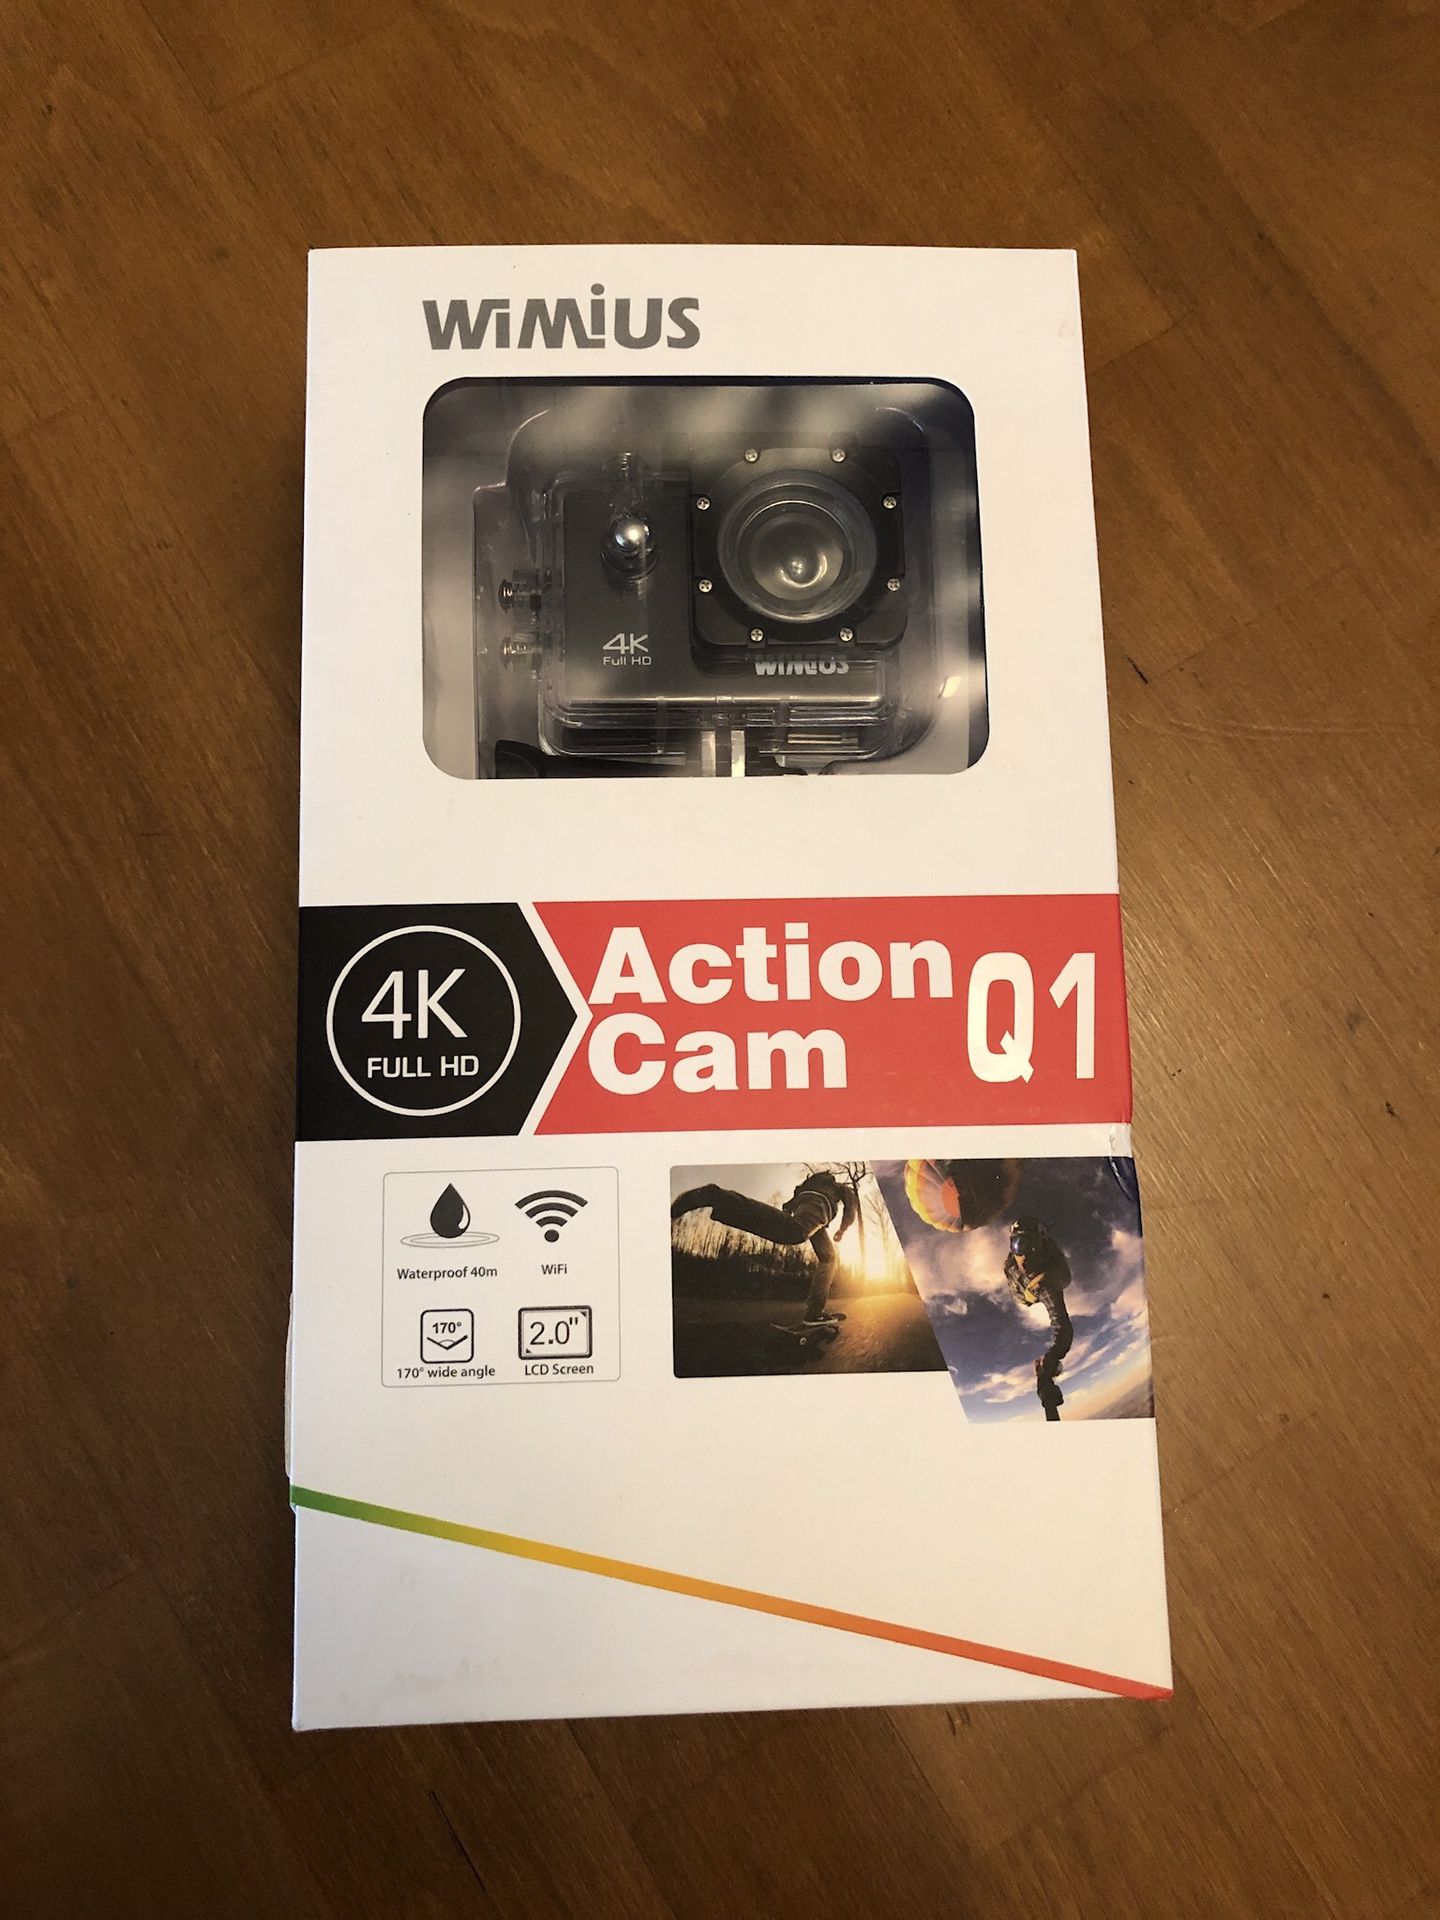 WiMius 4K Action Cam Q1